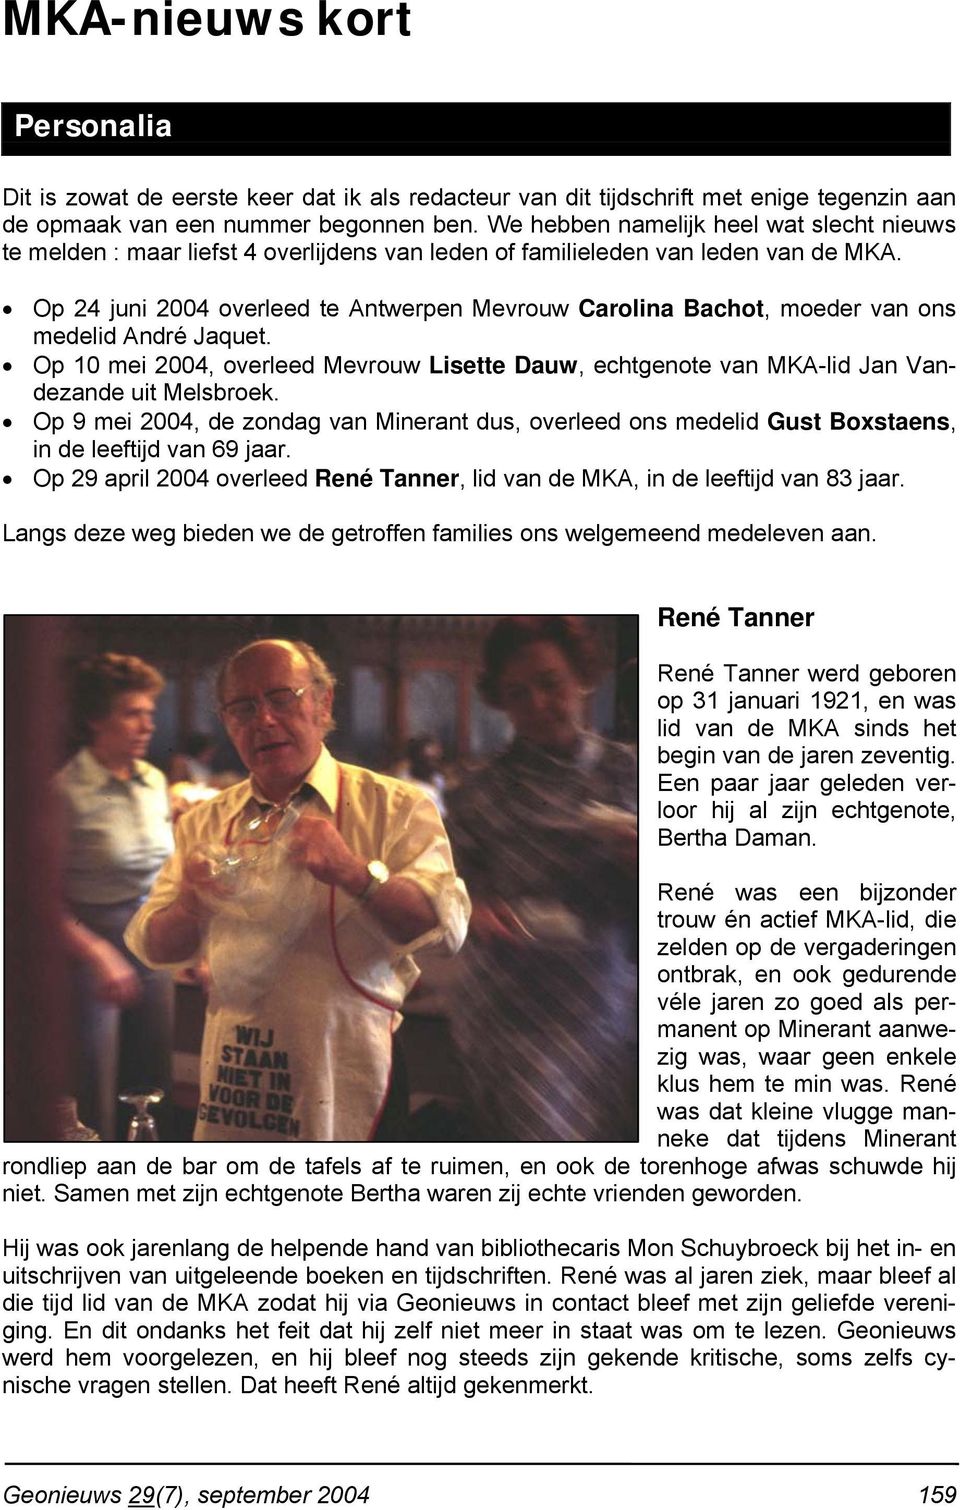 Op 24 juni 2004 overleed te Antwerpen Mevrouw Carolina Bachot, moeder van ons medelid André Jaquet. Op 10 mei 2004, overleed Mevrouw Lisette Dauw, echtgenote van MKA-lid Jan Vandezande uit Melsbroek.